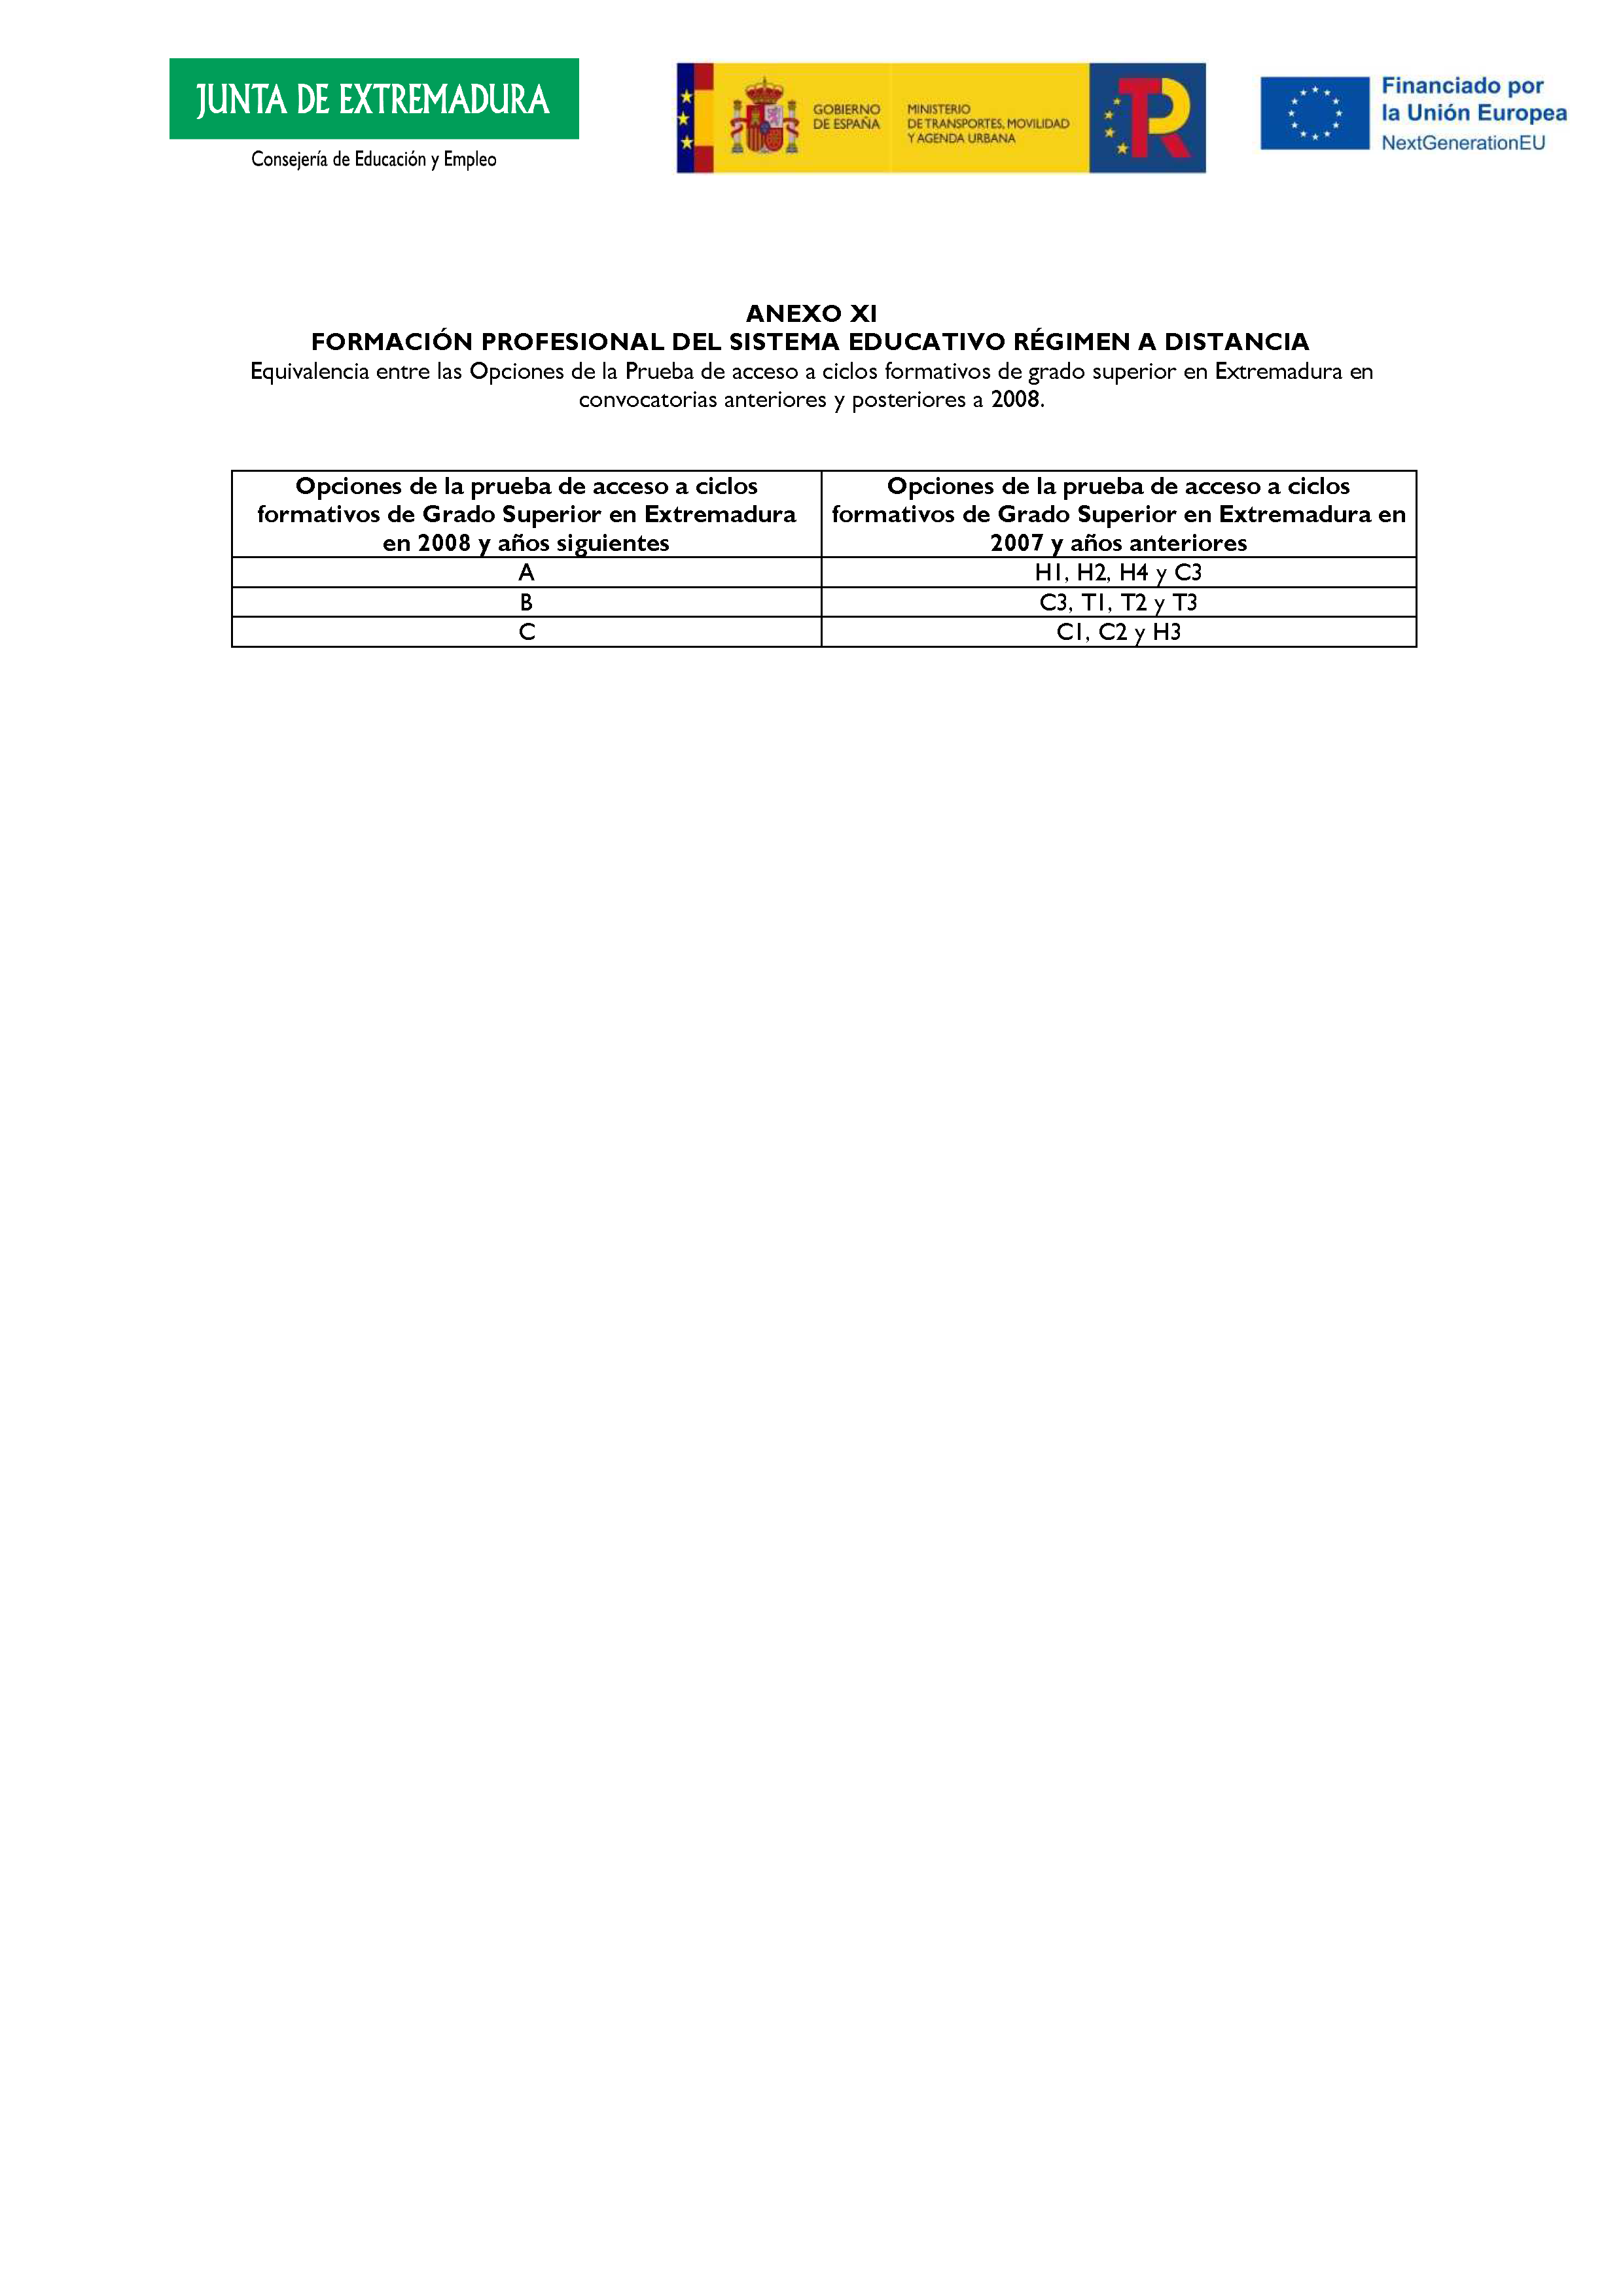 ANEXO FORMACIÓN PROFESIONAL DEL SISTEMA EDUCATIVO RÉGIMEN A DISTANCIA Pag 21